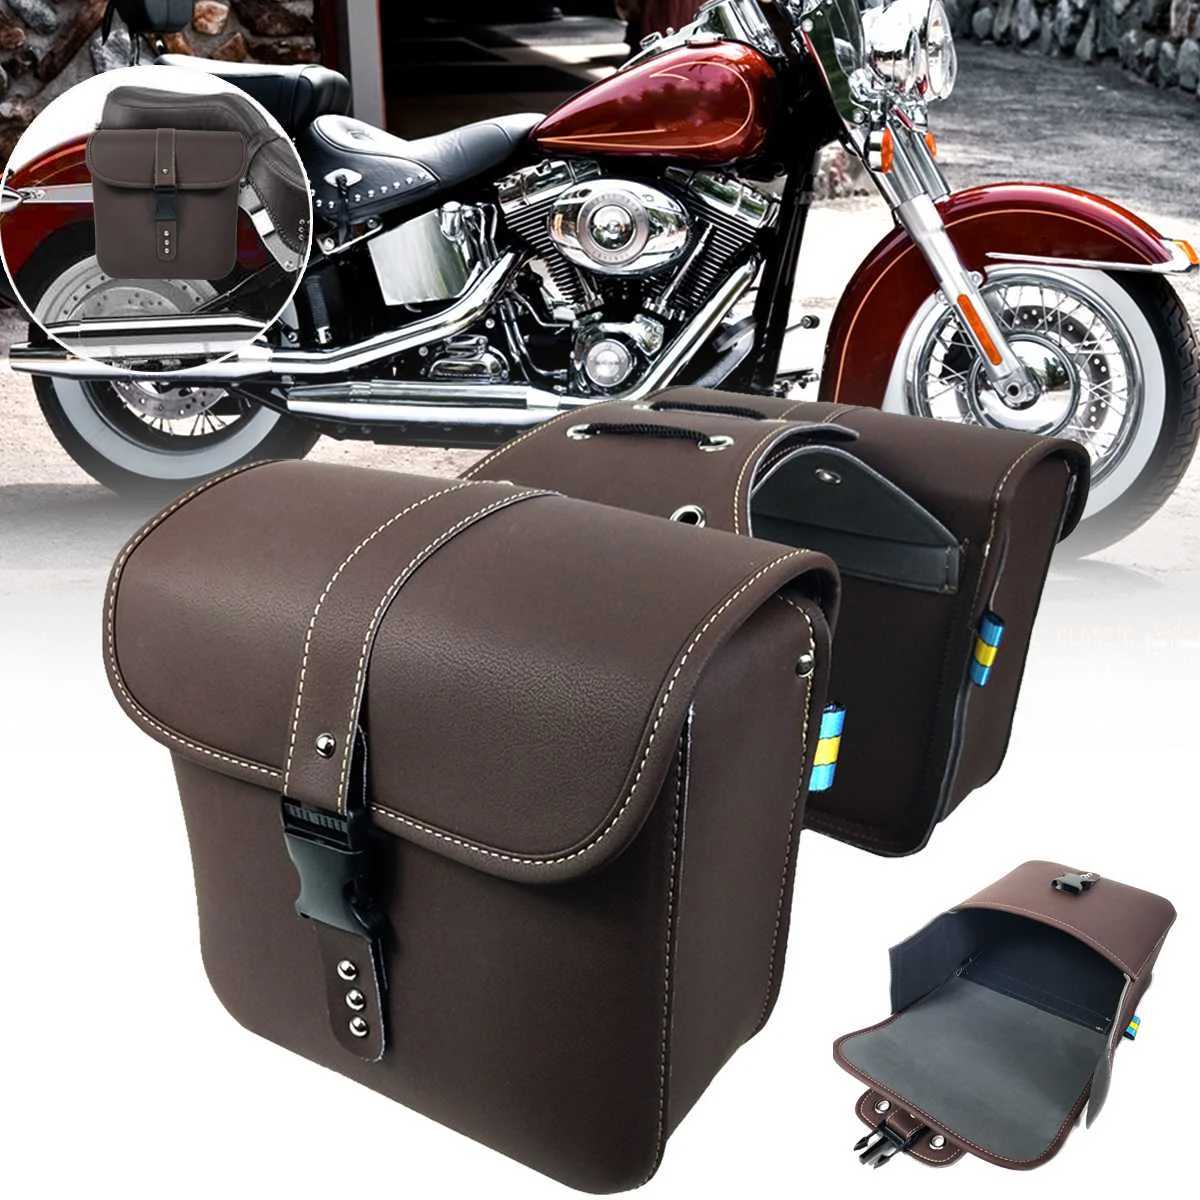 

Мотоциклетные седельные сумки из искусственной кожи Cafe Racer боковая сумка для инструментов сумка для хранения багажа коричневая универсаль...